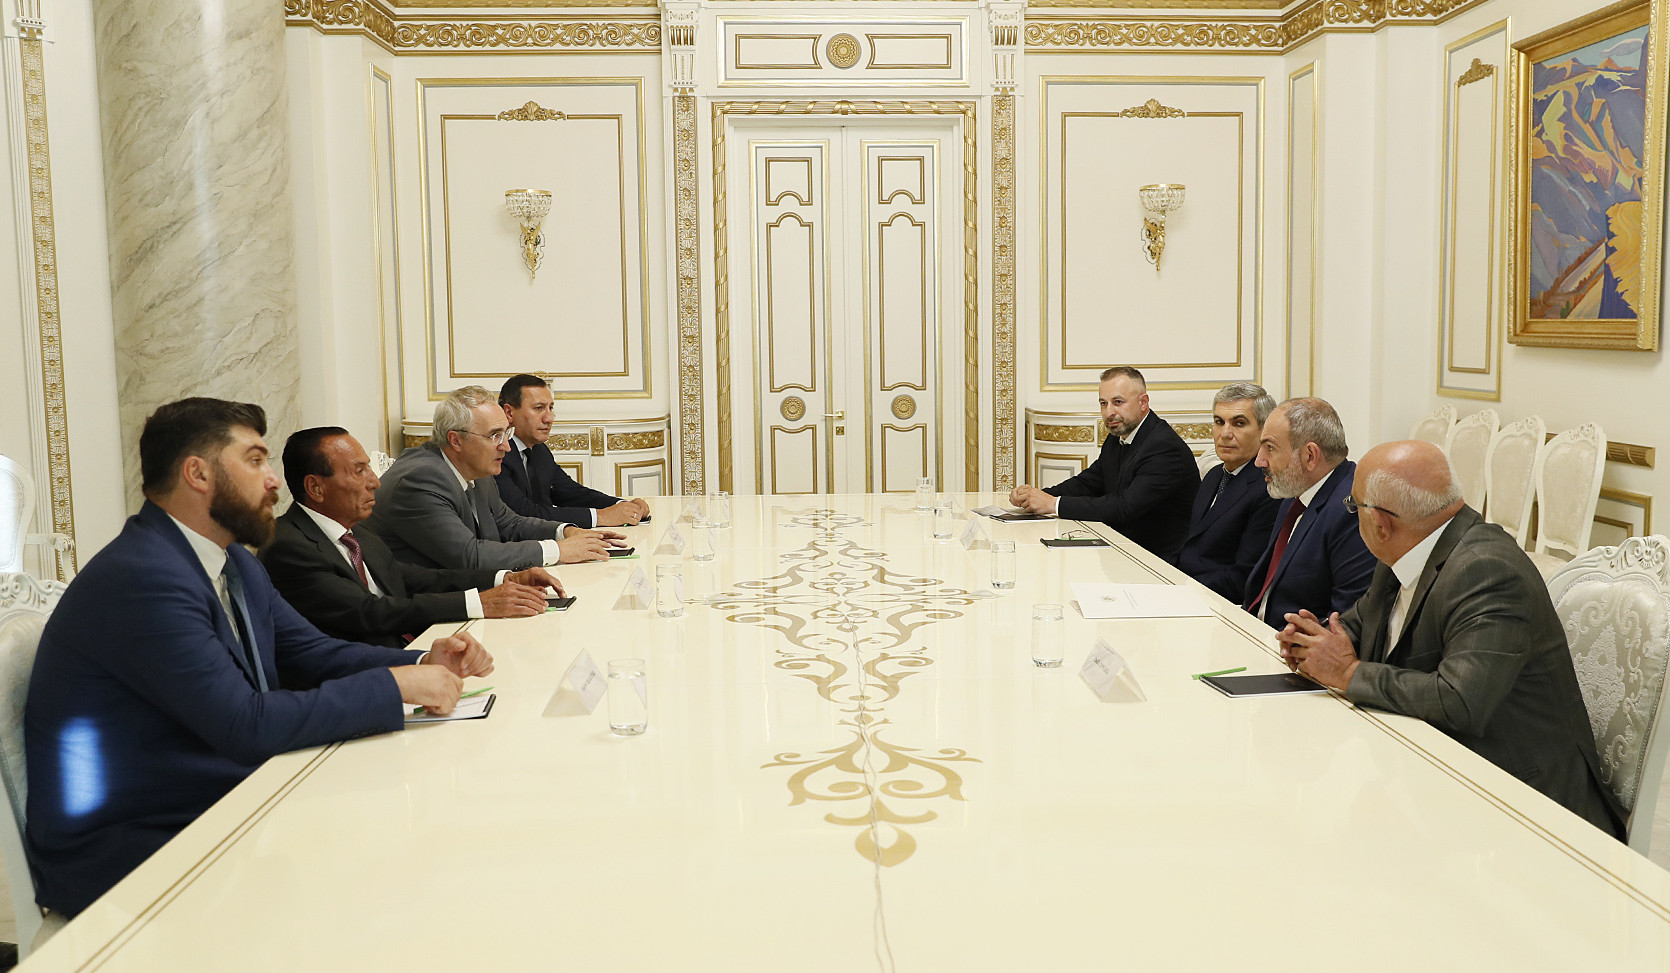 ՀՀ վարչապետը հանդիպել է արտախորհրդարանական քաղաքական ուժերի ղեկավարների հետ